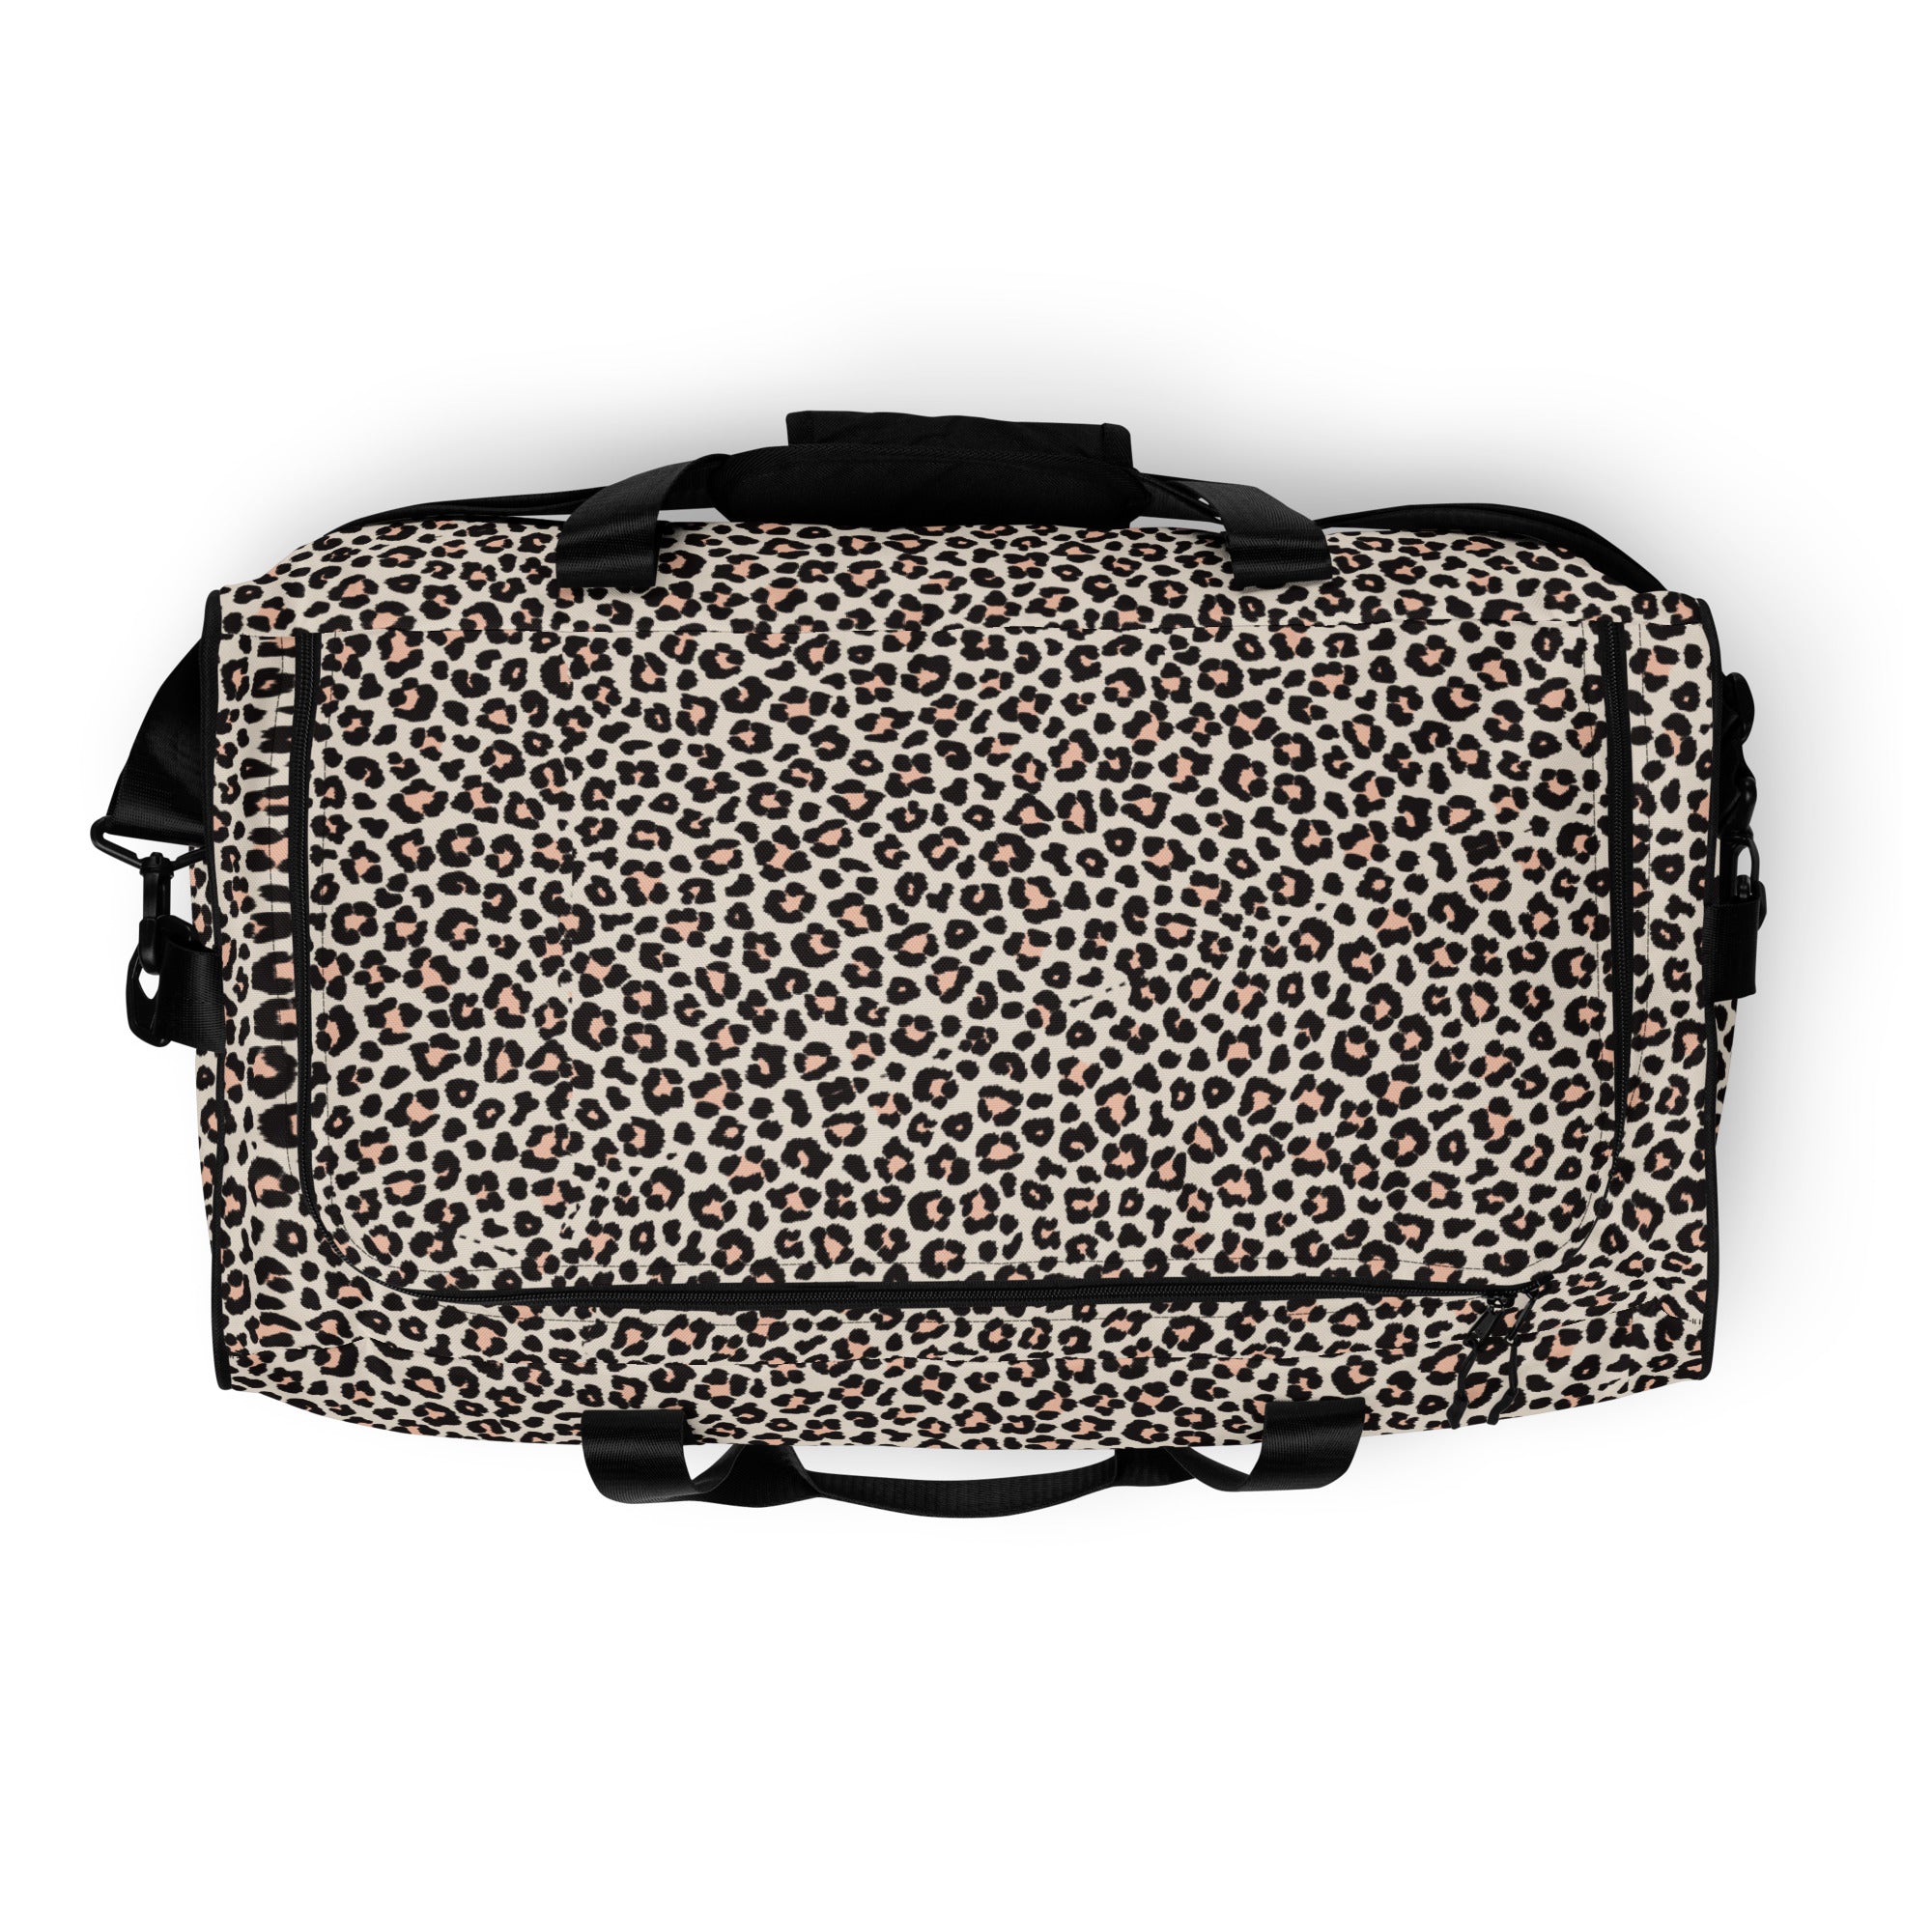 Leopard Duffle Bag